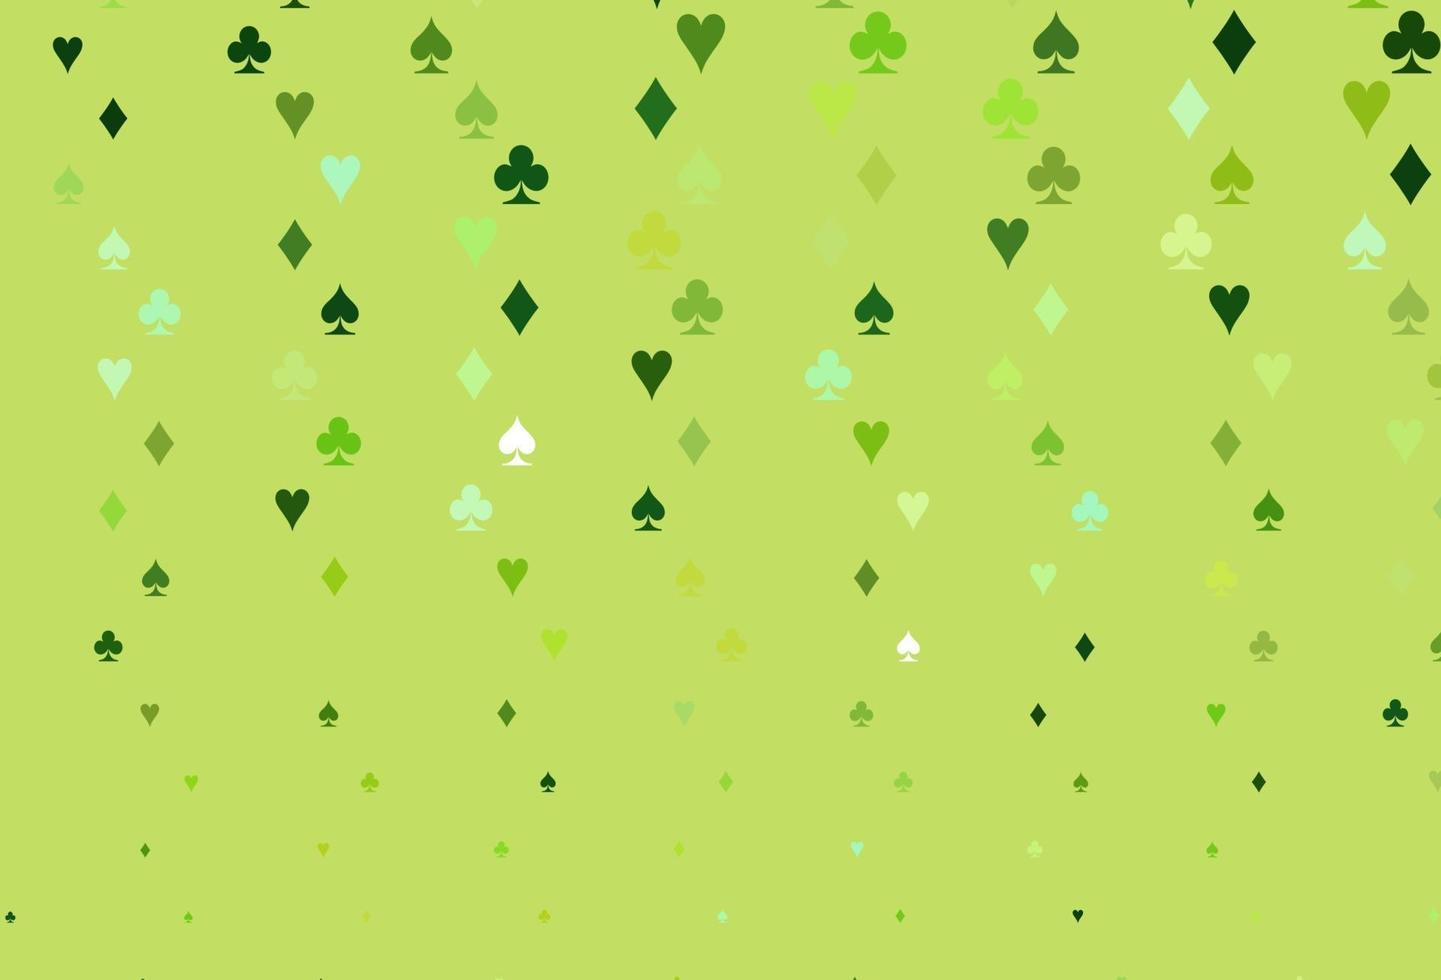 padrão de vetor verde claro com símbolo de cartas.